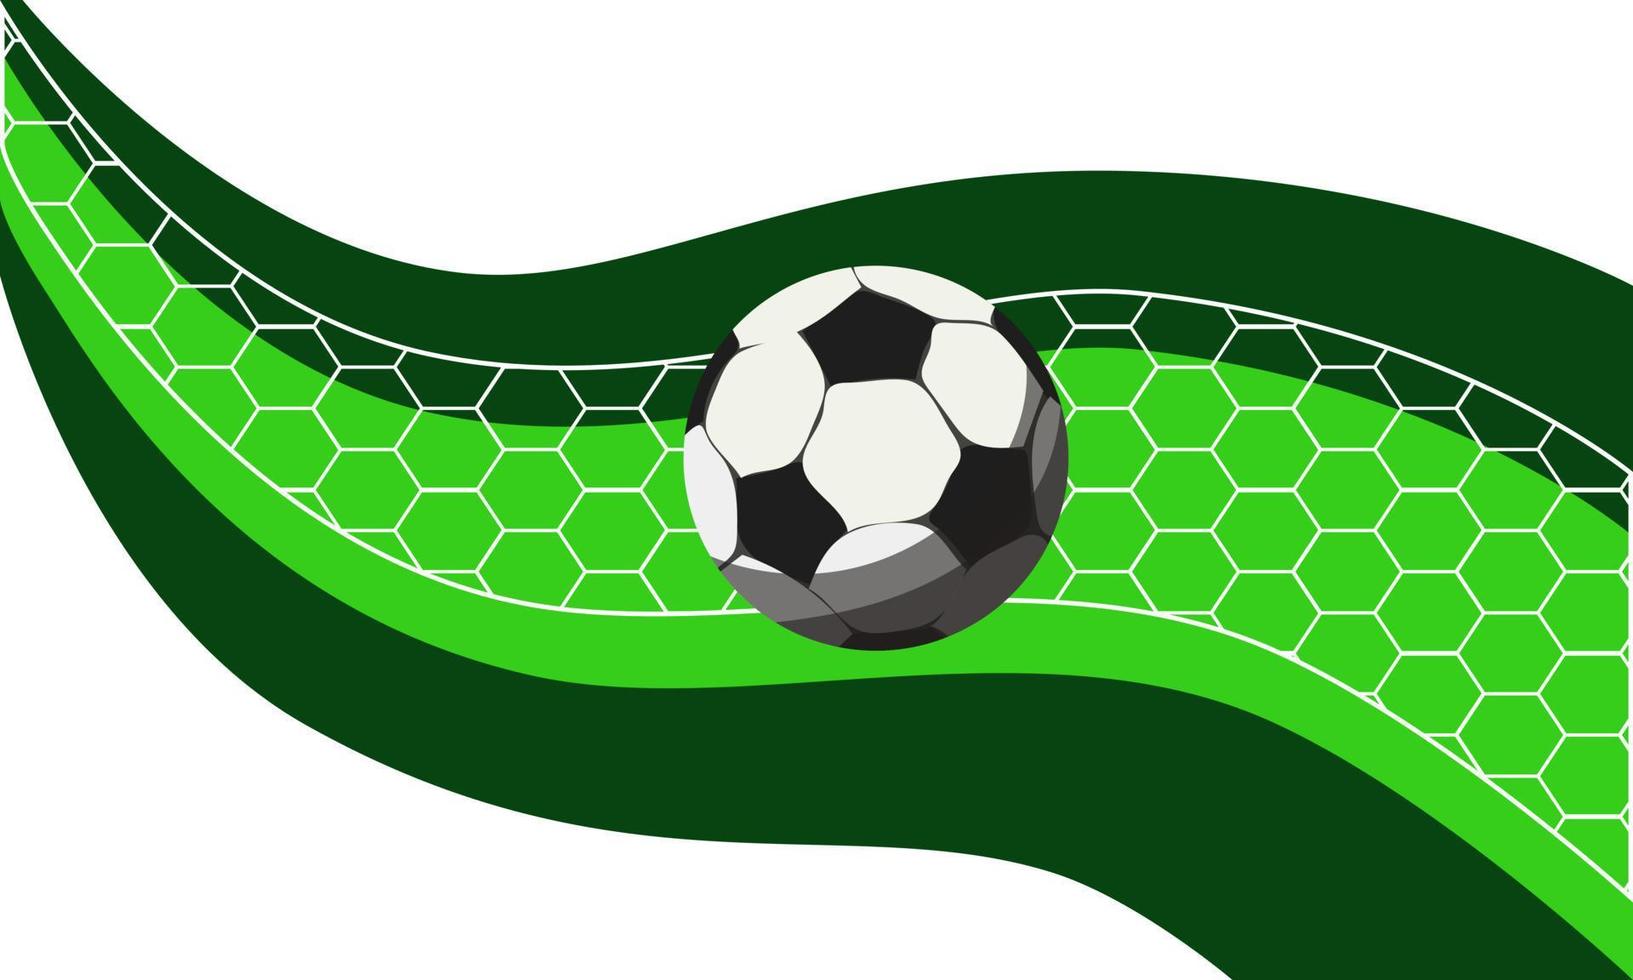 fondo abstracto en forma de campo de fútbol con una pelota y una red. imitación de un partido de fútbol. el tema del fútbol. el movimiento de la pelota a lo largo de la línea. impresión de pancartas, volantes. vector